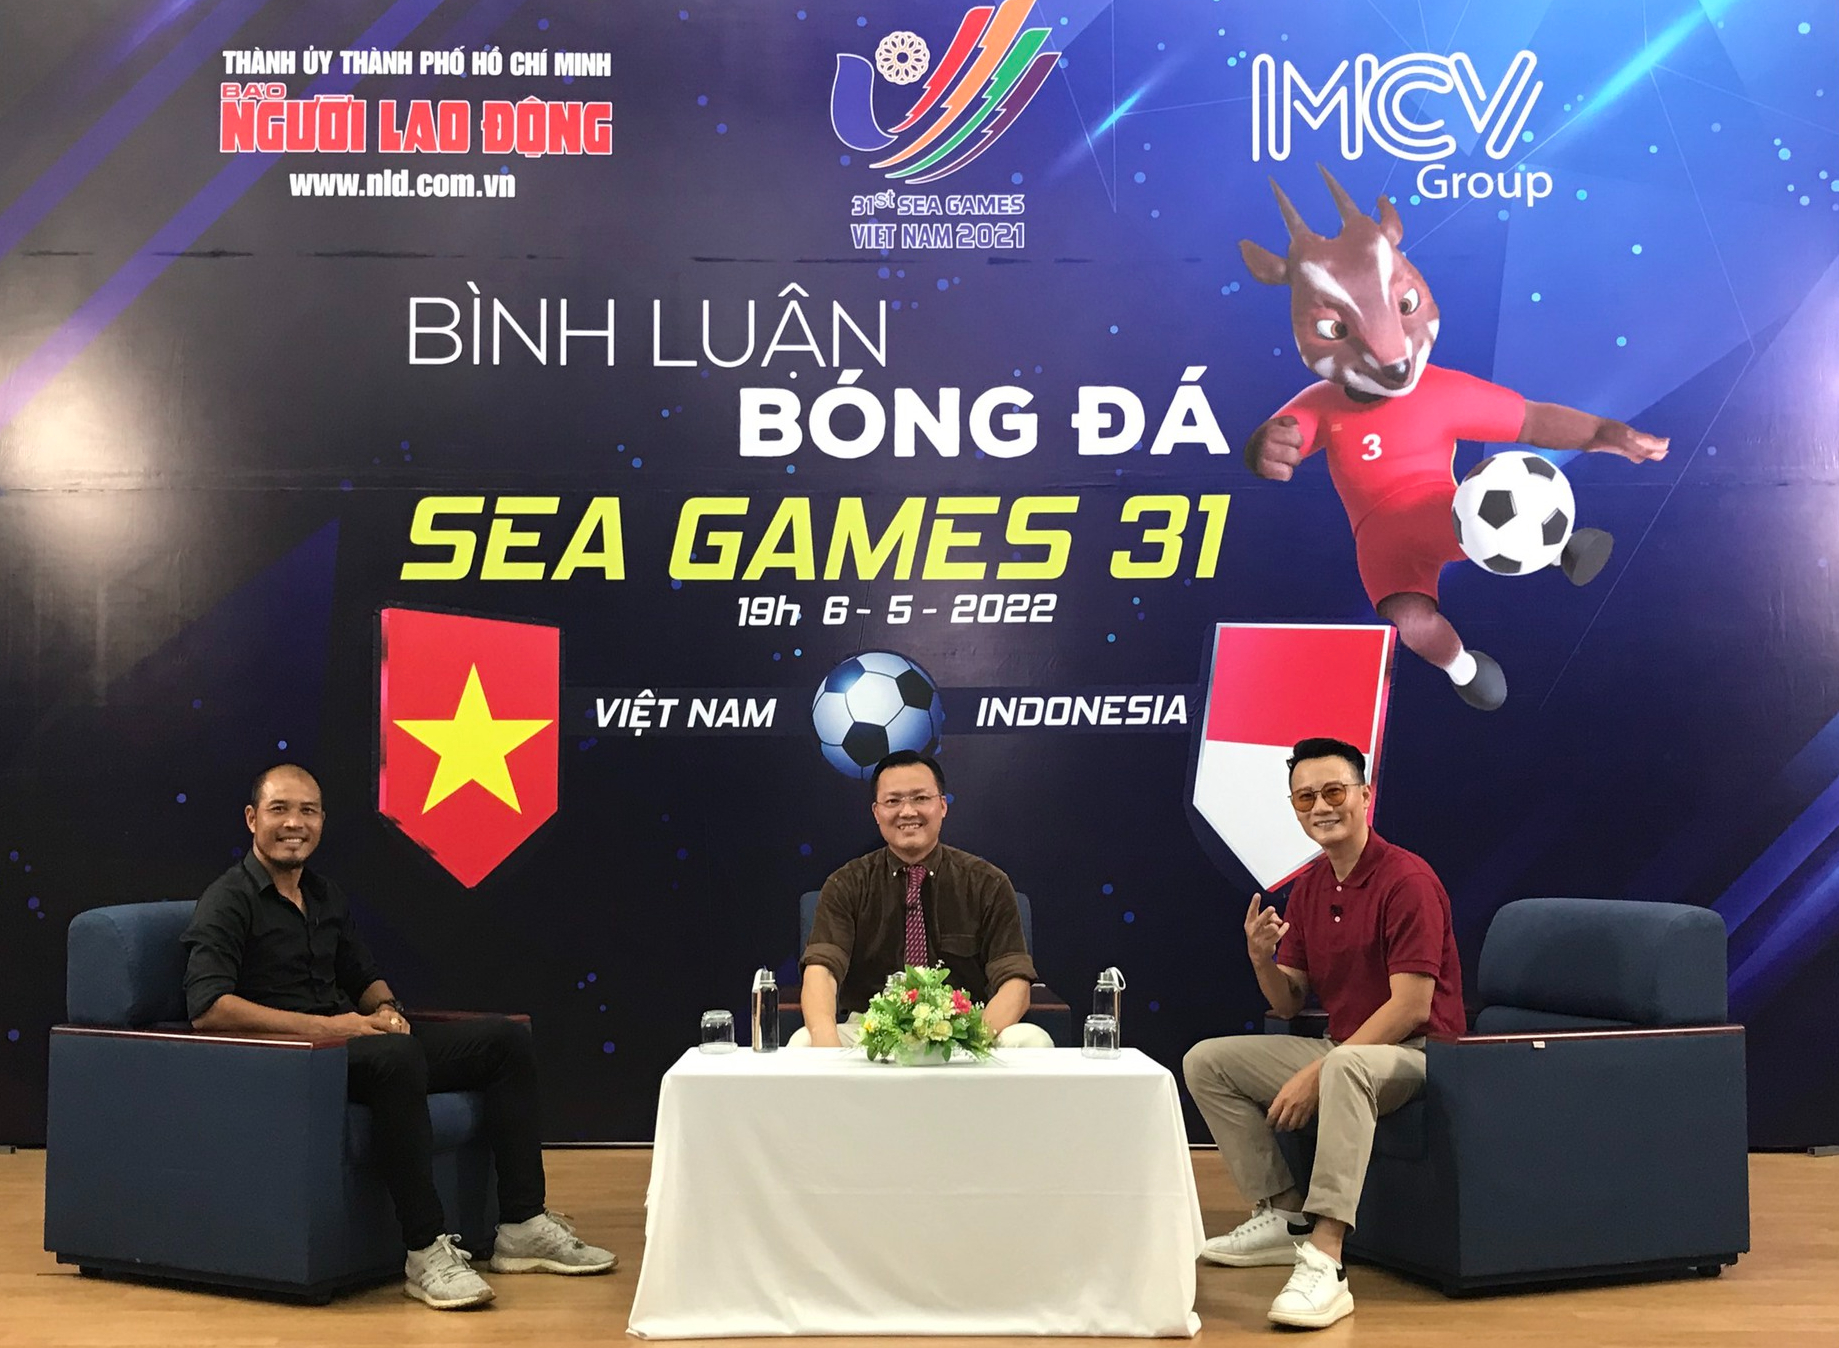 Bóng đá SEA Games đang trở thành niềm tự hào của Việt Nam, và chắc chắn không ai muốn bỏ lỡ những khoảnh khắc đầy cảm xúc của các trận đấu. Nhấn play ngay để cảm nhận một không khí sôi động!